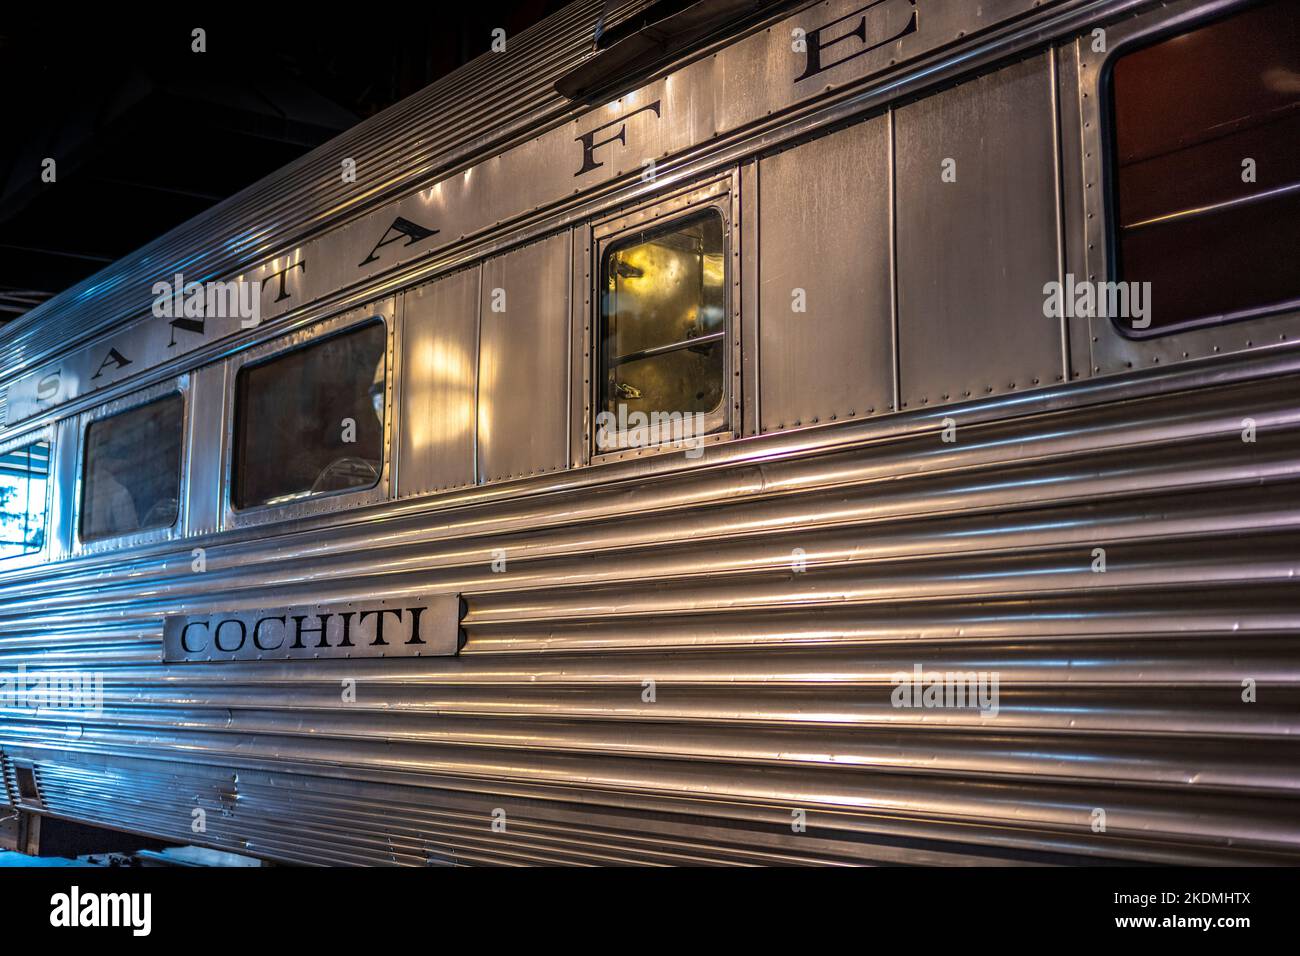 La ferrovia 'cochiti' prende il nome da un pueblo indiano di 1.000 anni nel New Mexico, è stata utilizzata come una lussuosa auto da pranzo per la FERROVIA AT & SF dal 1937 Foto Stock